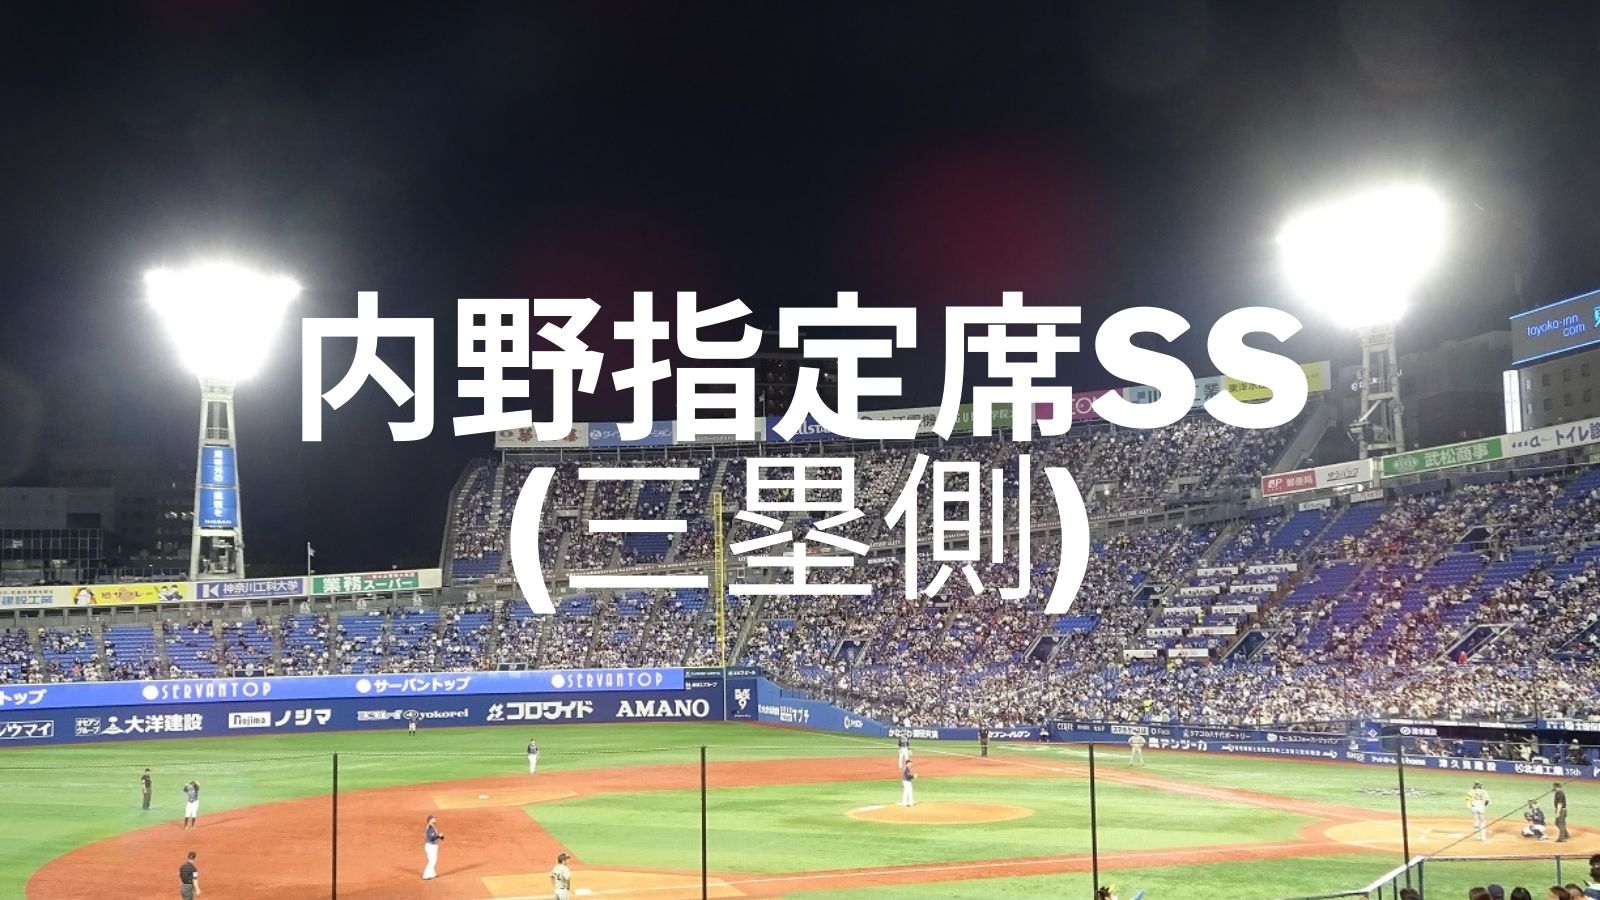 内野指定席ss 三塁側の紹介 横浜スタジアム 22 6 つるぐりブログ